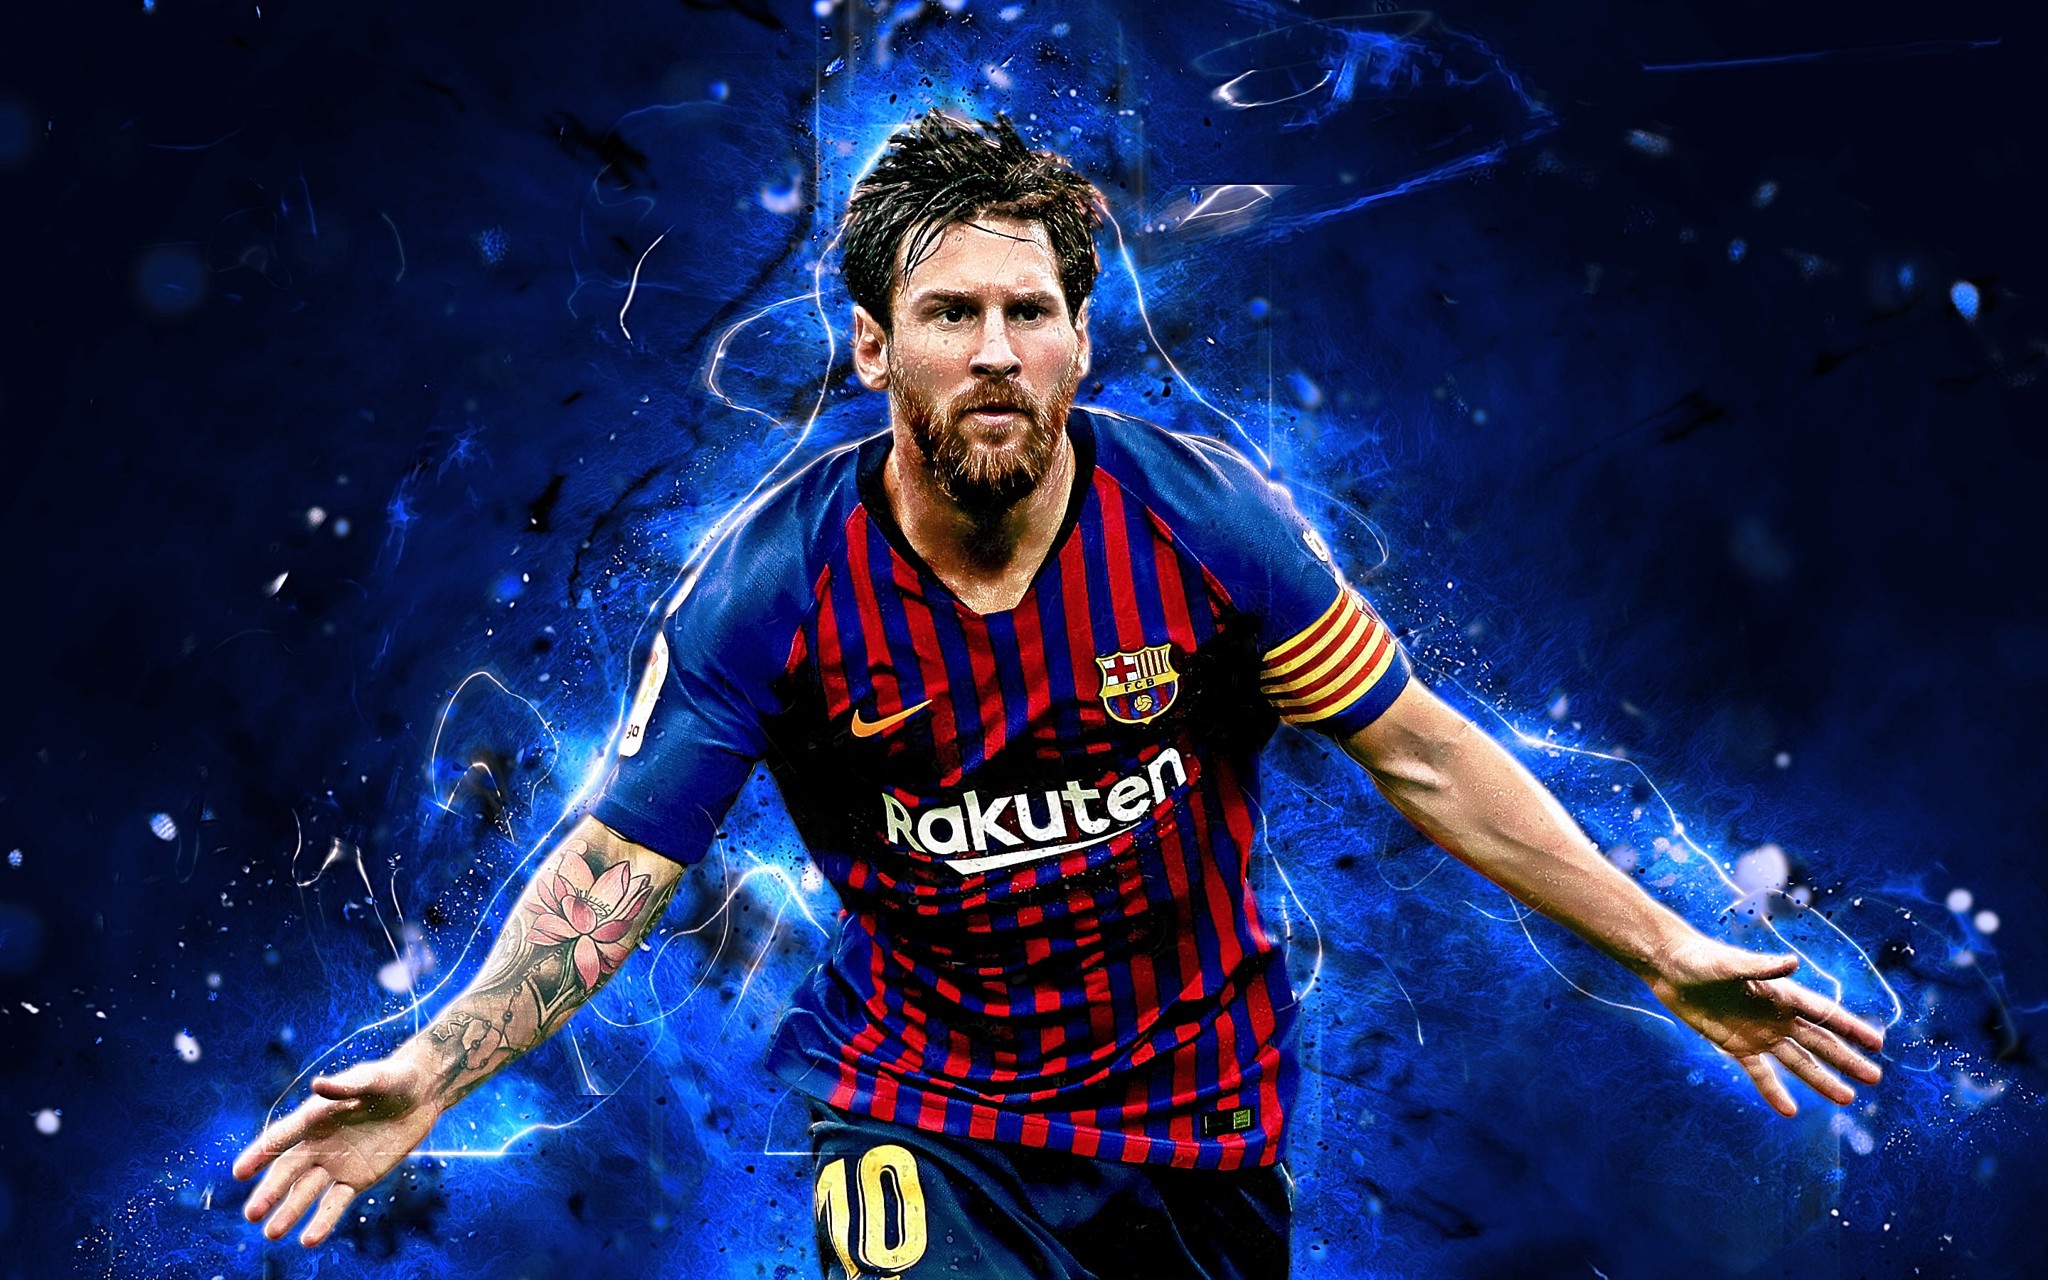 Hình nền Messi là một trong những cách tuyệt vời để thể hiện tình yêu và sự chiêm ngưỡng mà bạn dành cho cầu thủ xuất sắc này. Những bức ảnh đẹp mắt với hình ảnh của Messi sẽ cùng bạn thuận tiện nâng cao tâm trạng và sự năng động trên máy tính hoặc điện thoại của mình.